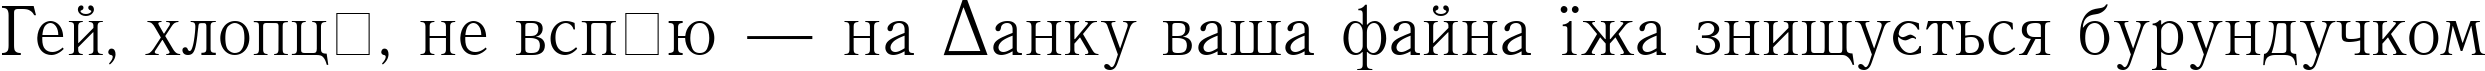 Пример написания шрифтом QuantAntiqua Medium текста на украинском